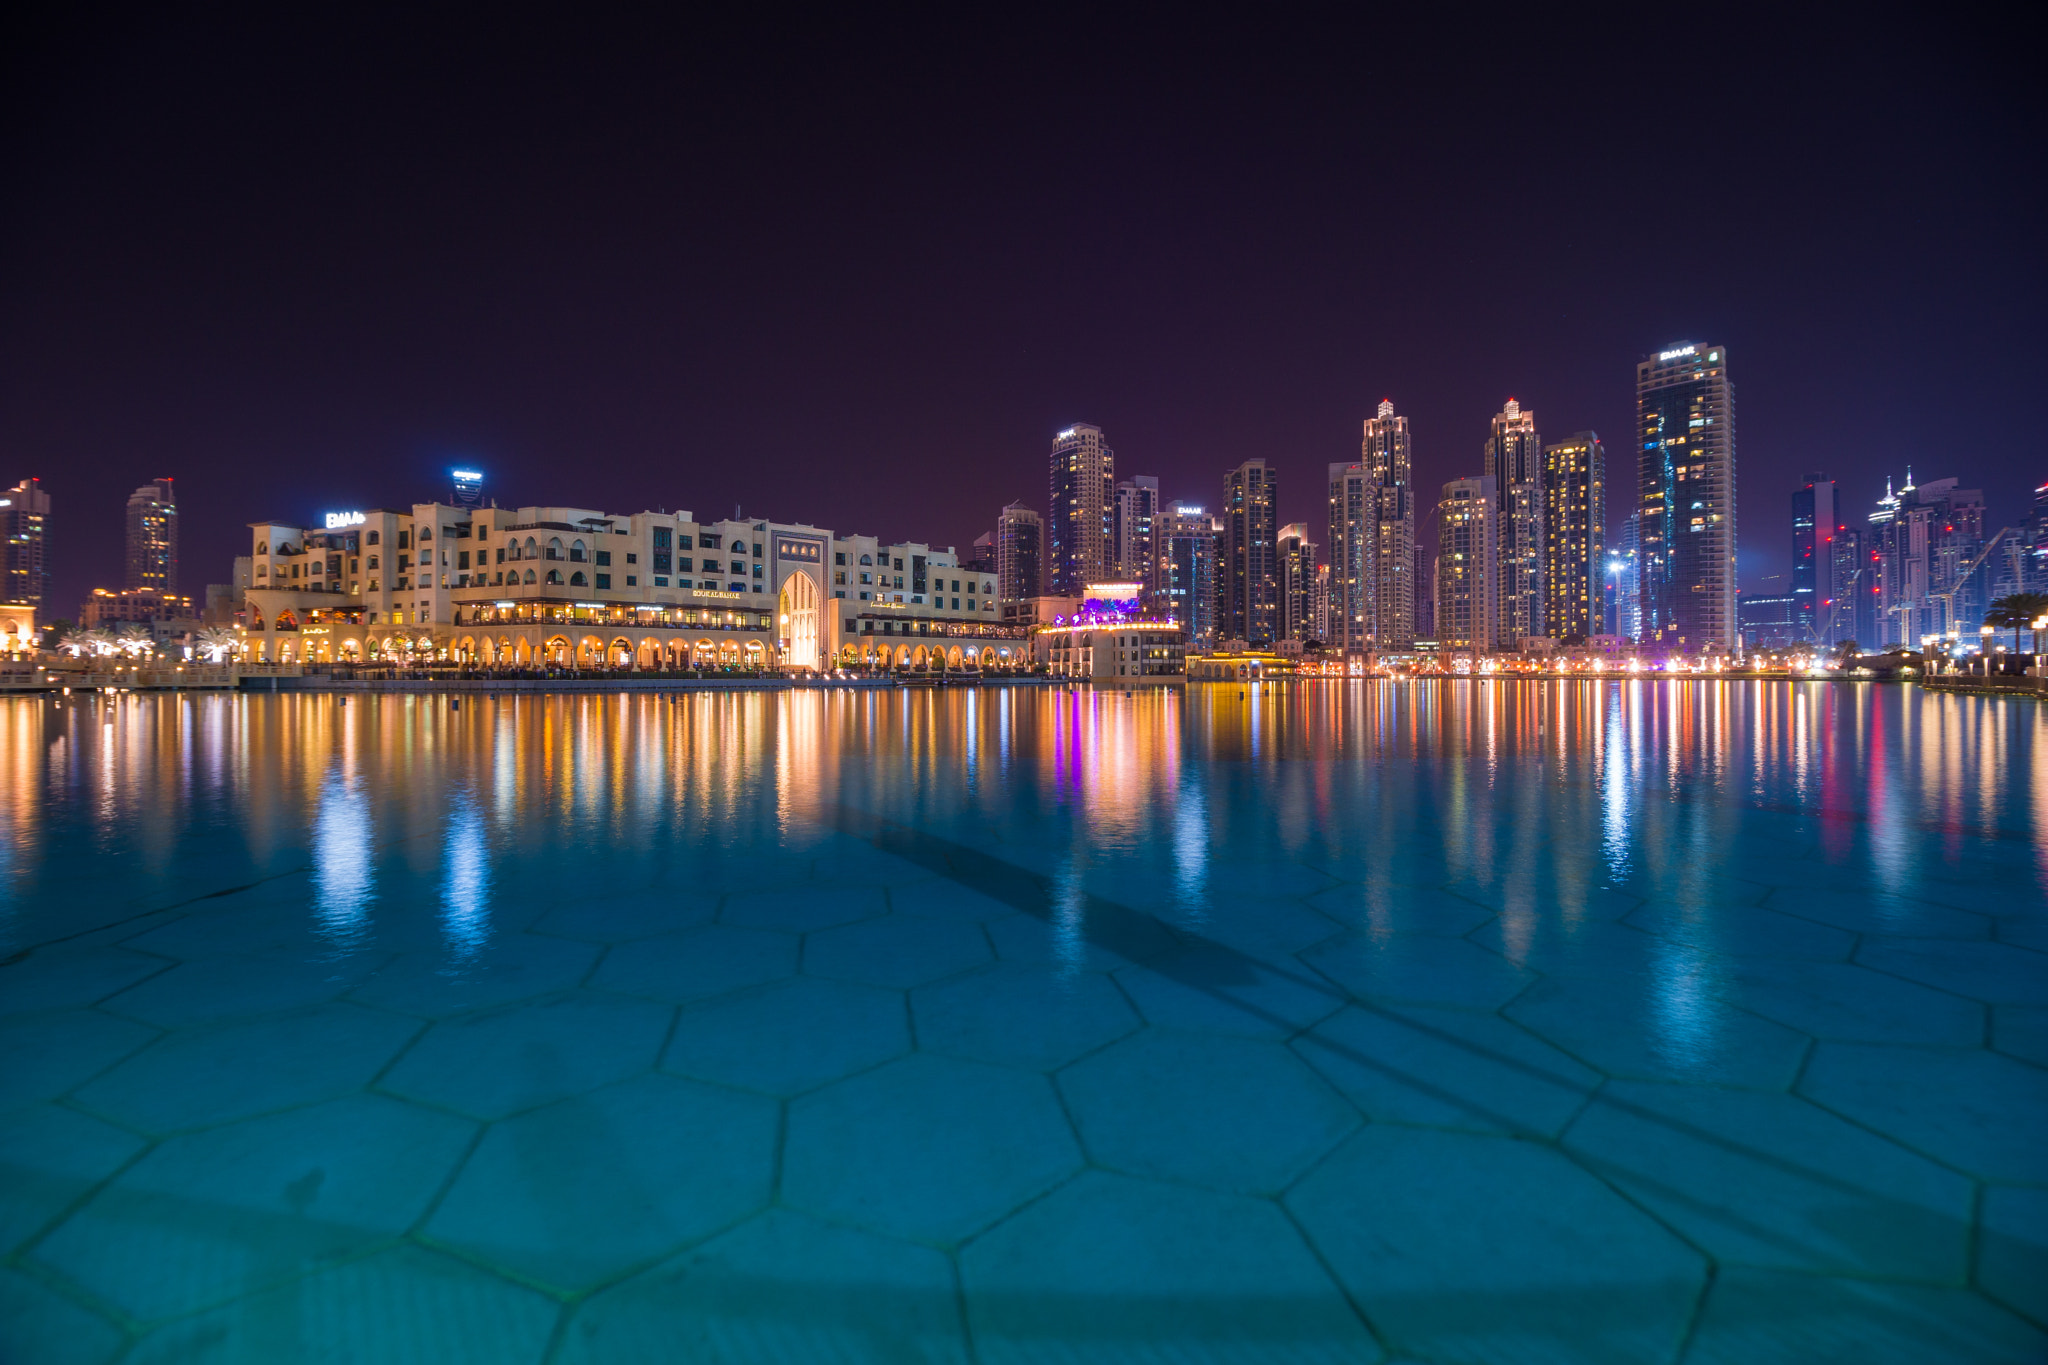 Sony a6000 sample photo. Dubai skyline by night photography